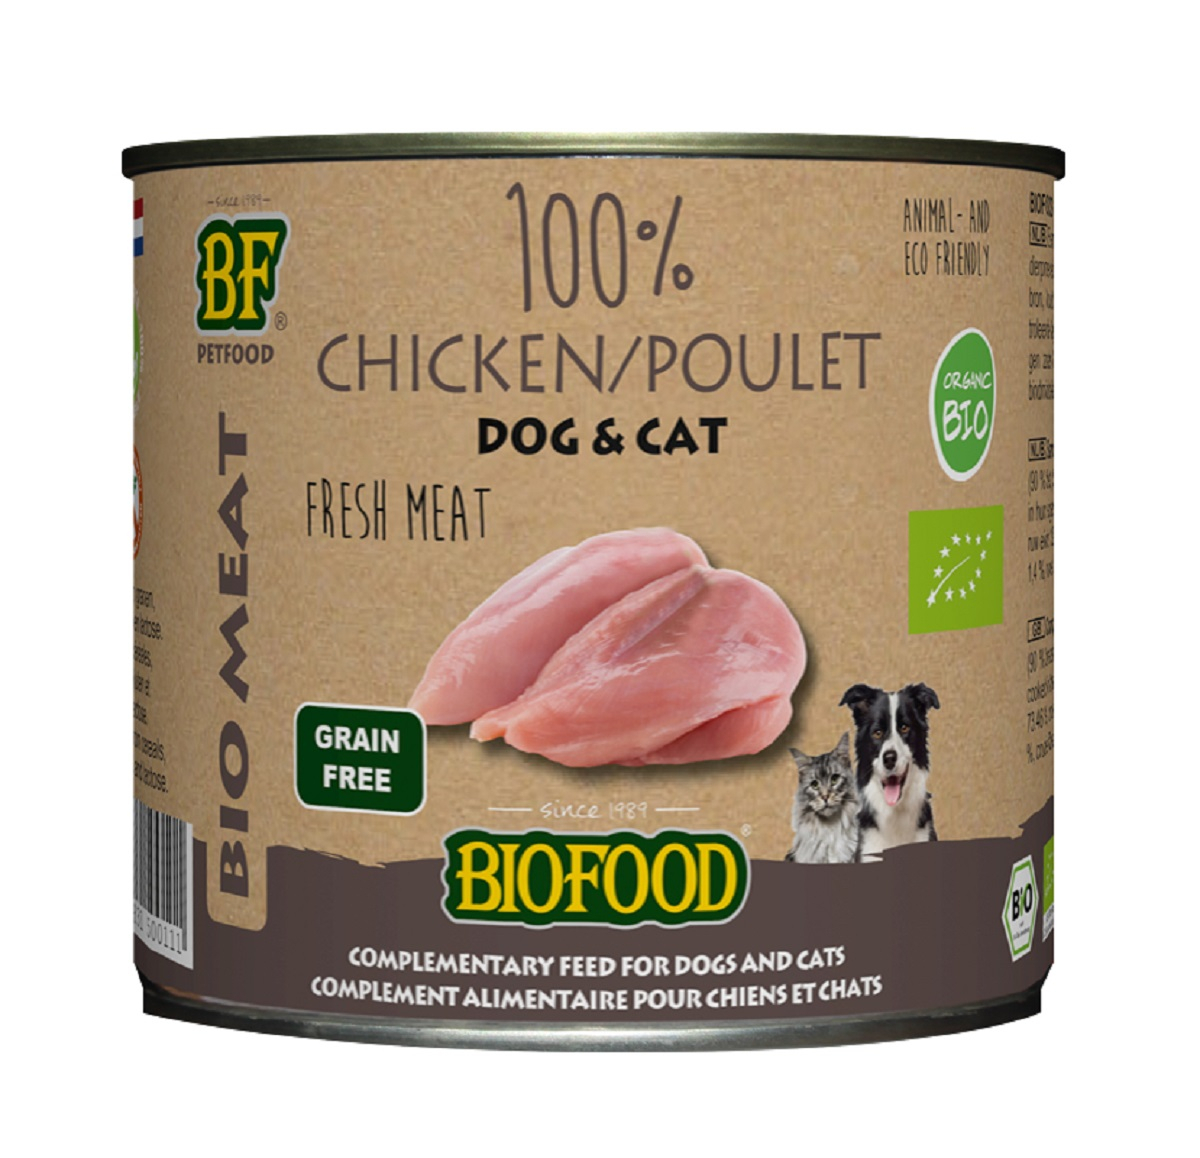 BF PETFOOD - BIOFOOD pâtée 100% viande de poulet BIO pour chien et chat